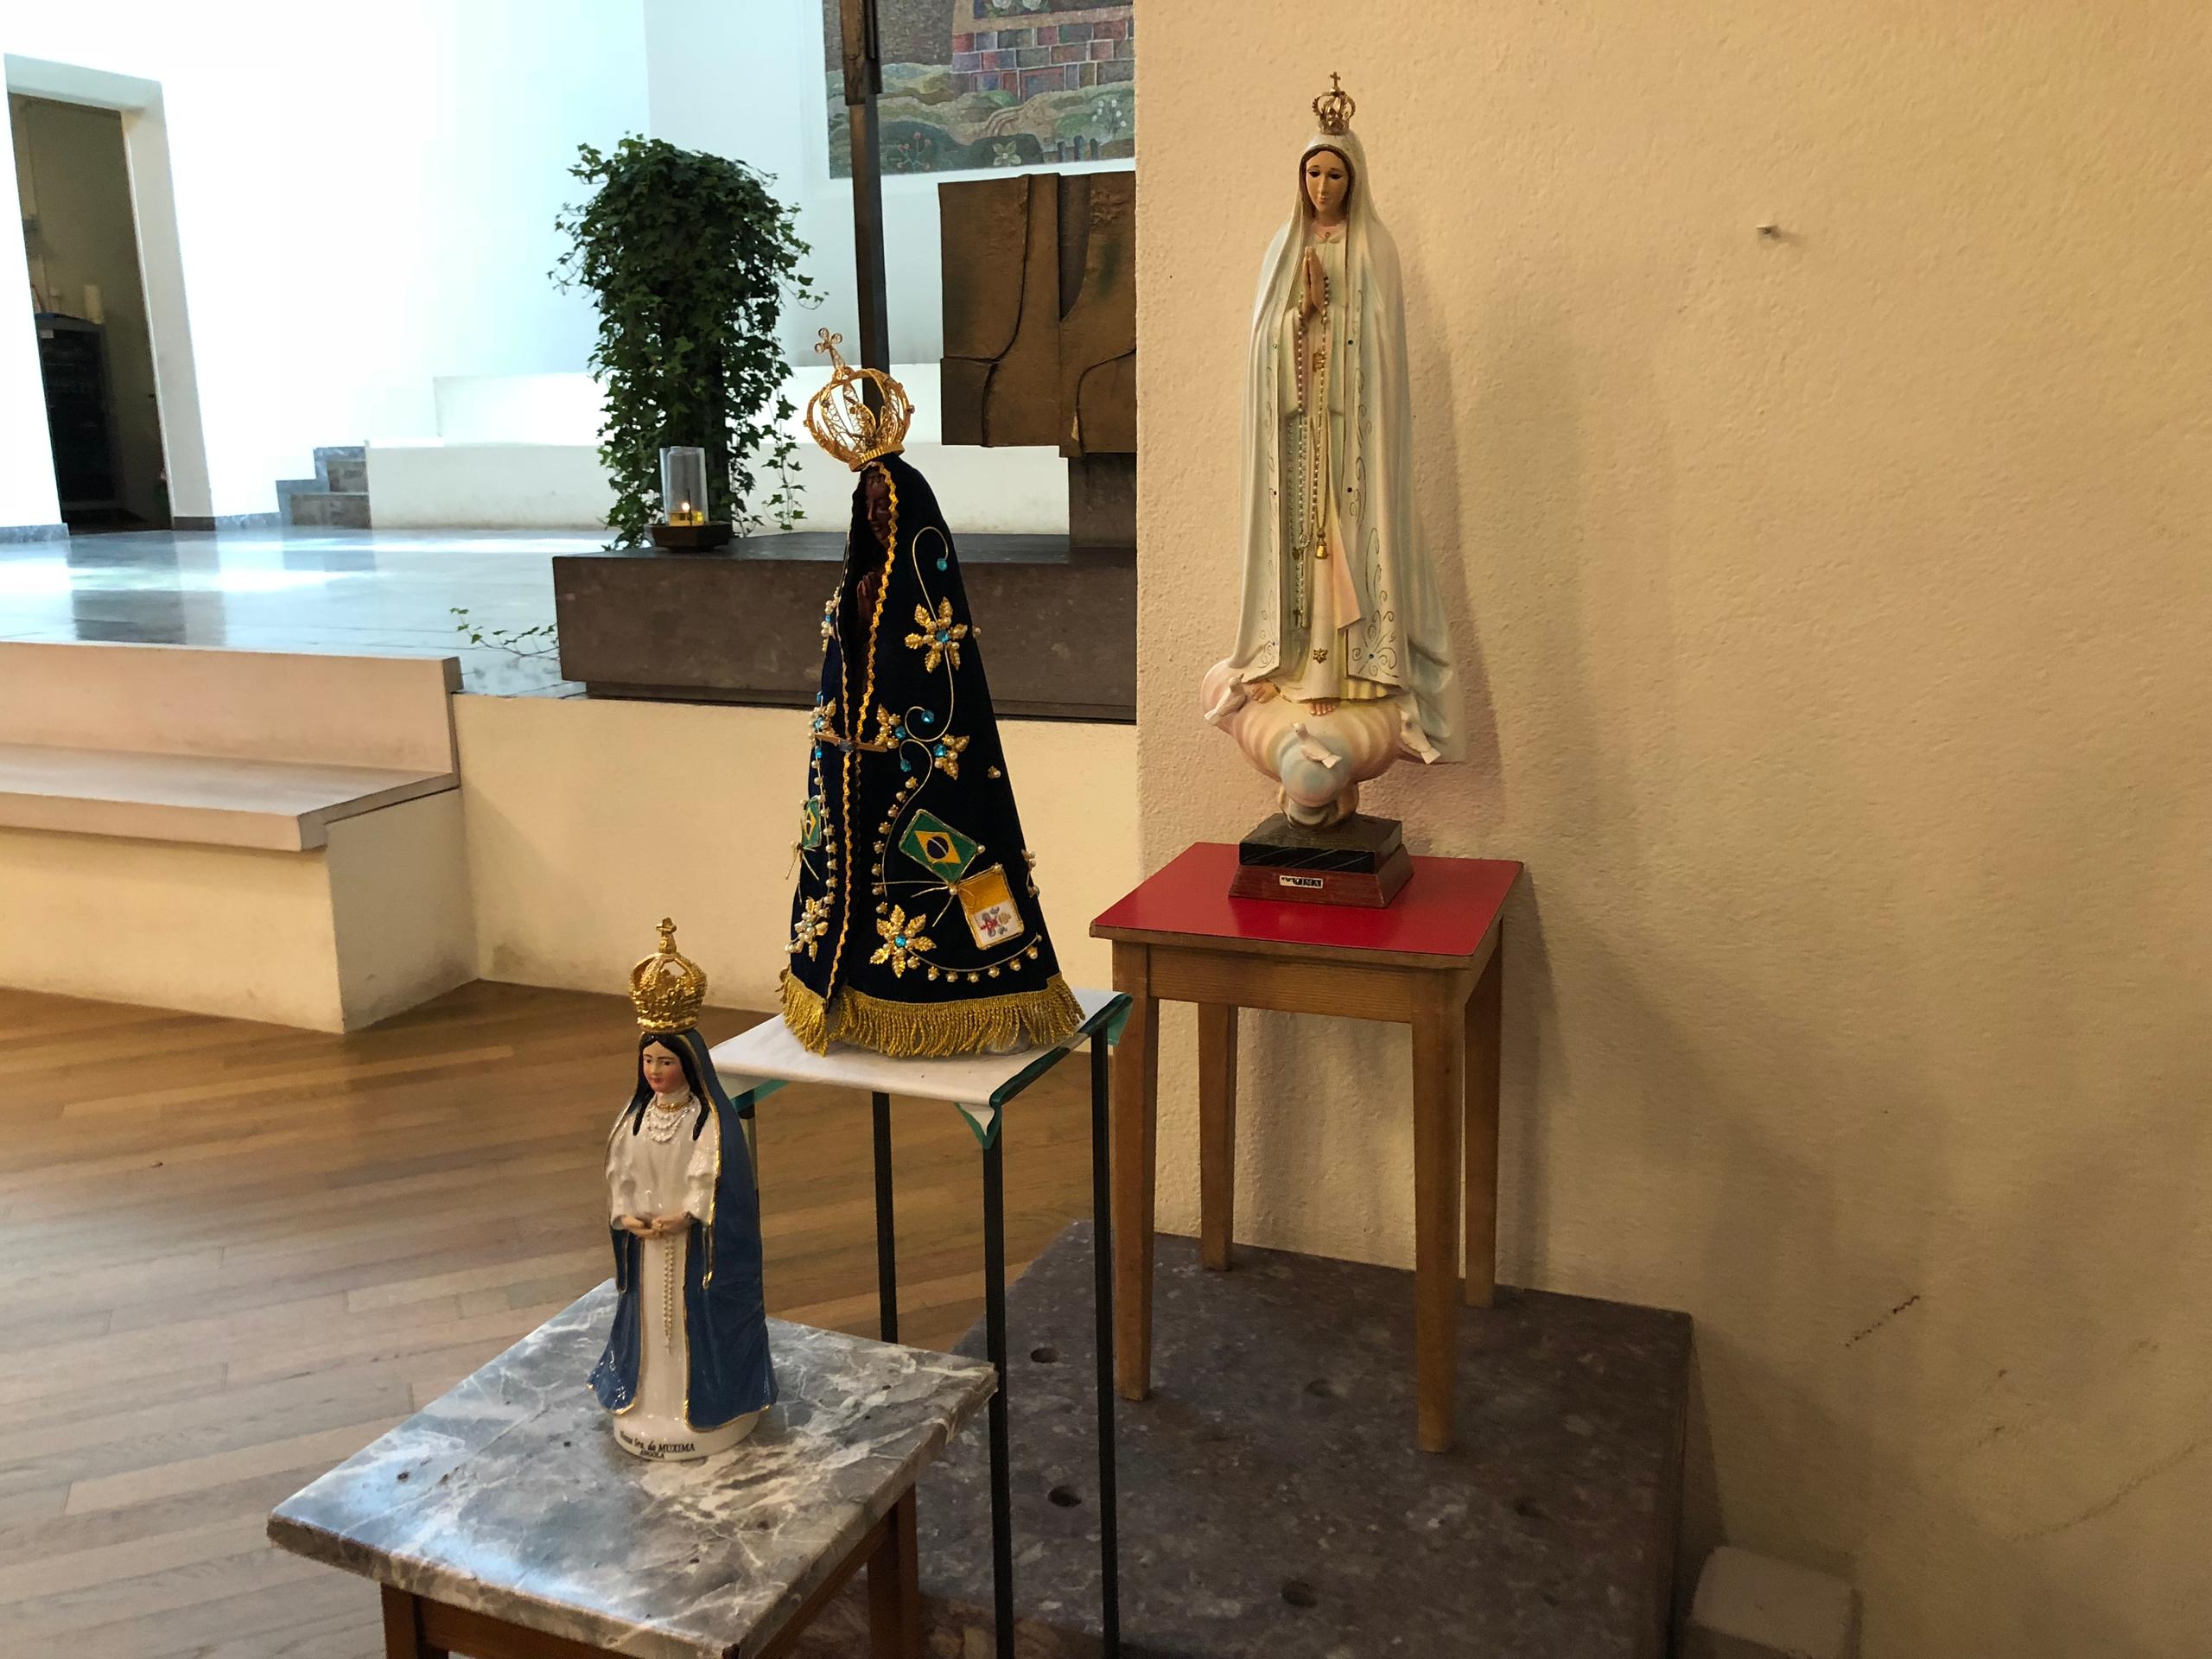 Três imagens religiosas próximas ao altar de uma igreja